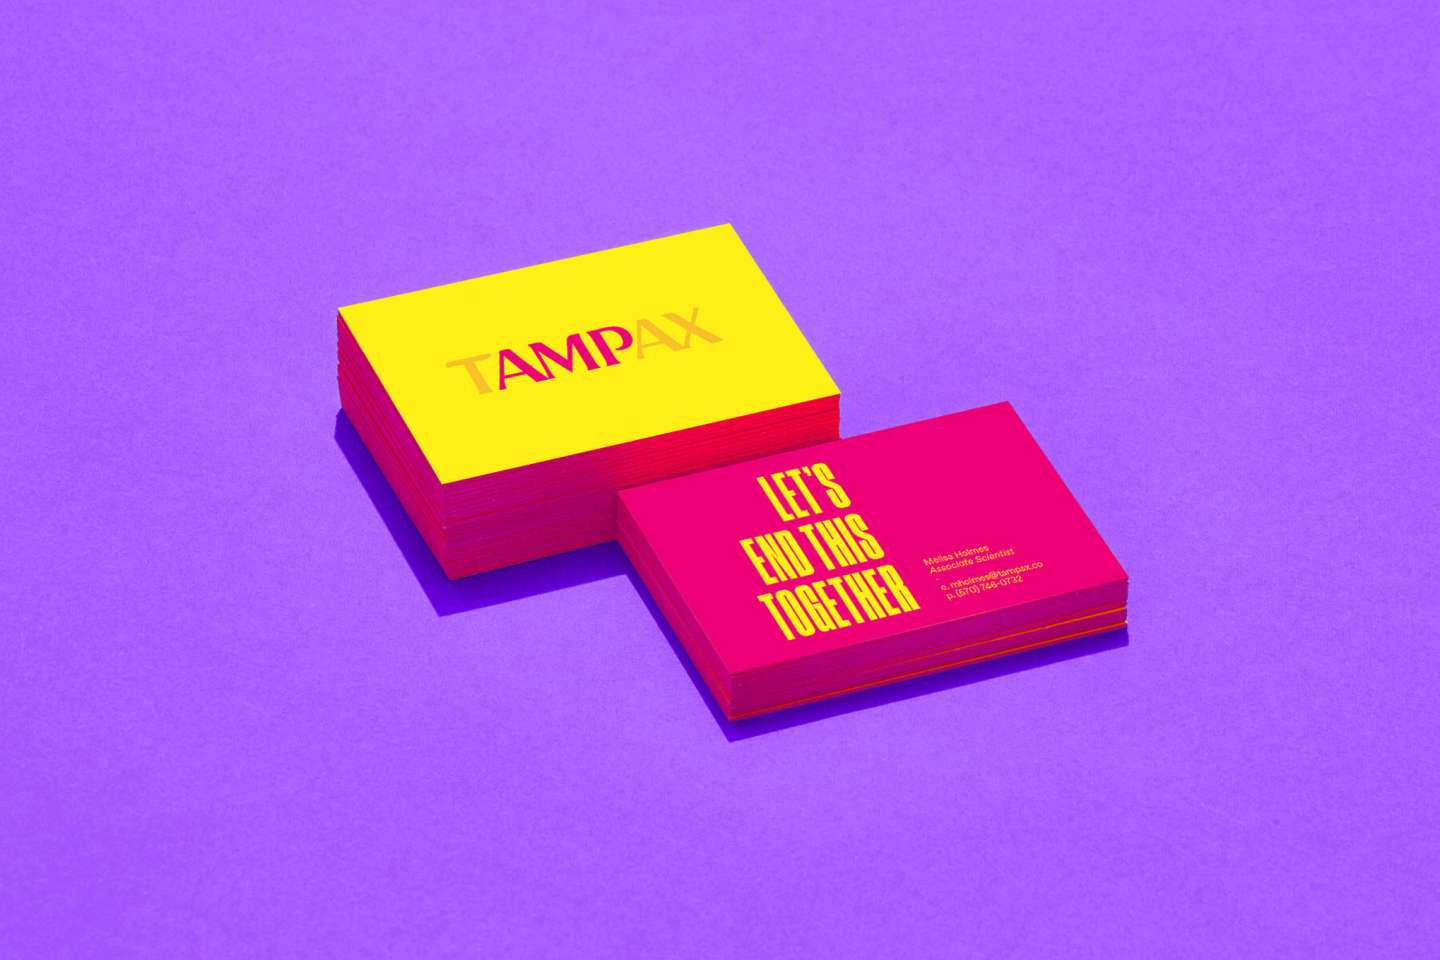 Tampax – AMP